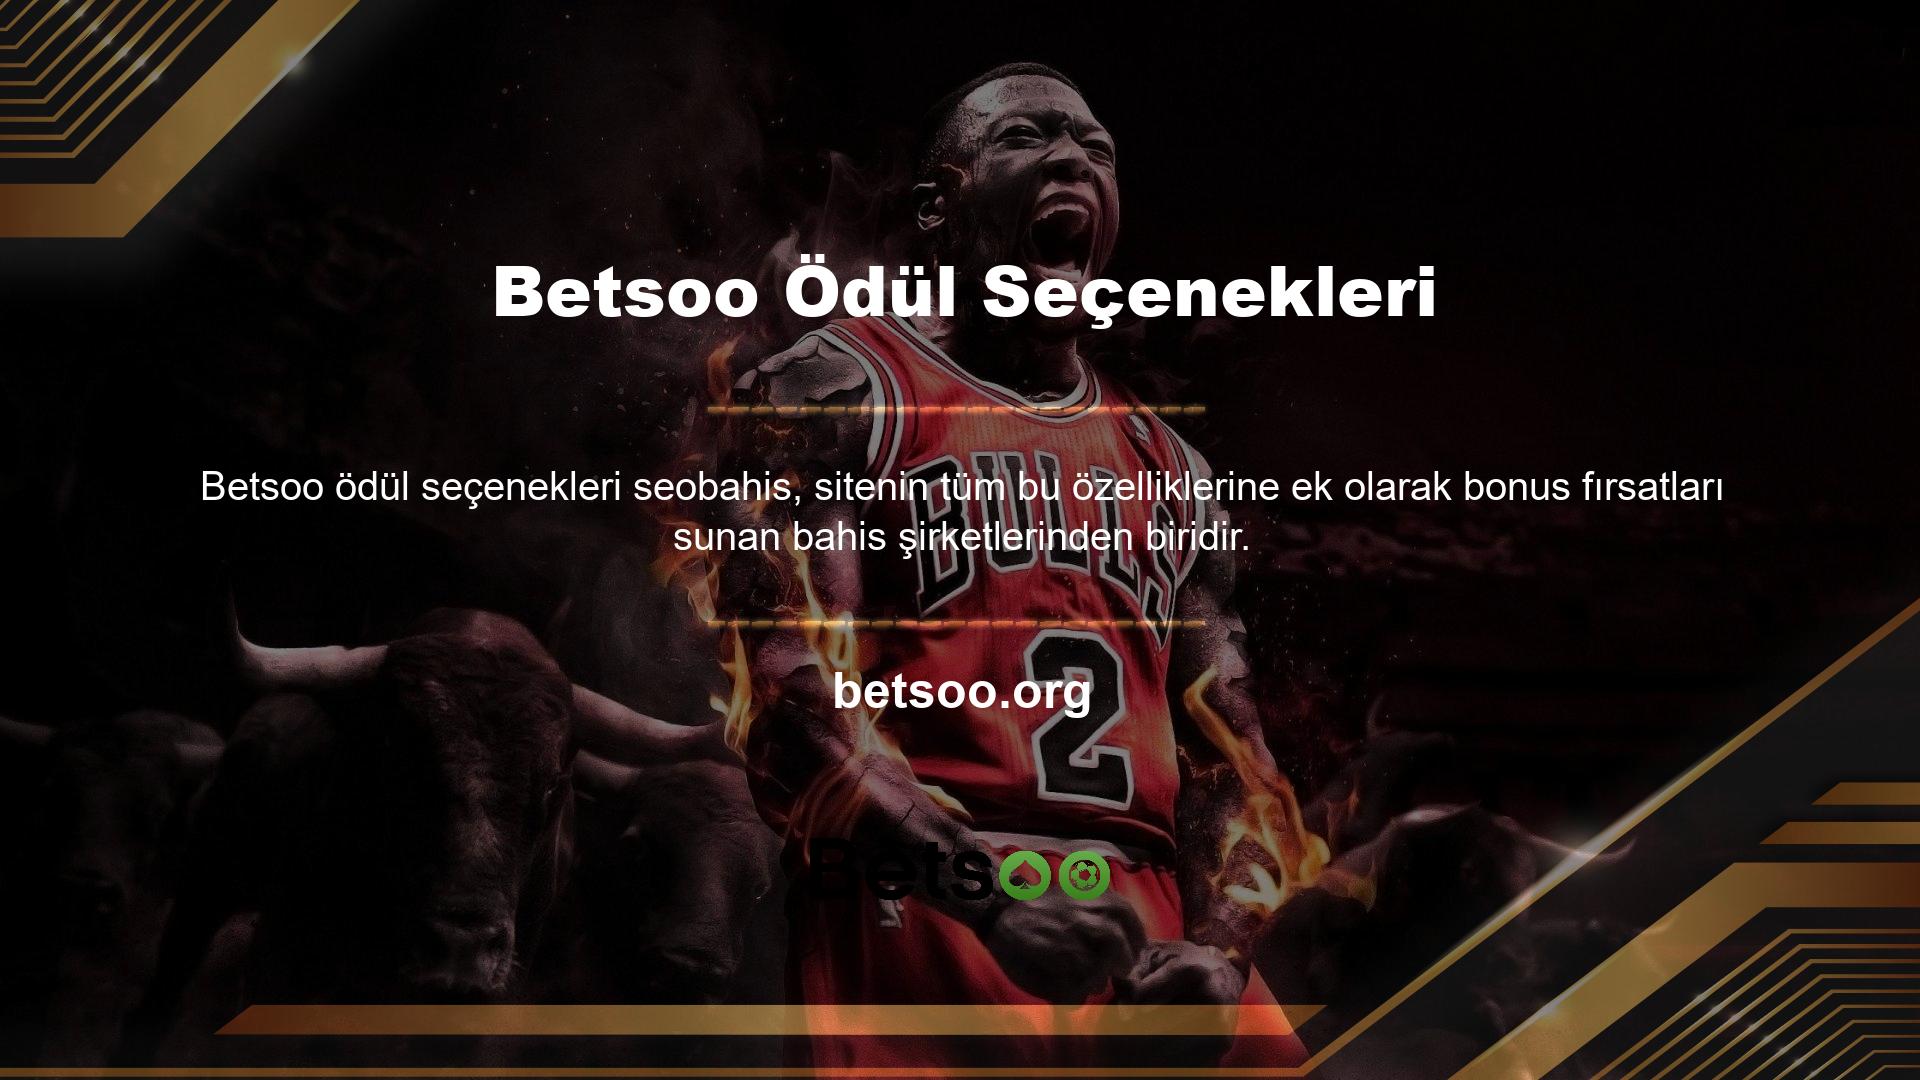 Betsoo ödül seçenekleri, sitede sunulan bonuslar sayesinde kazanmayı kolaylaştırmayı amaçlamaktadır